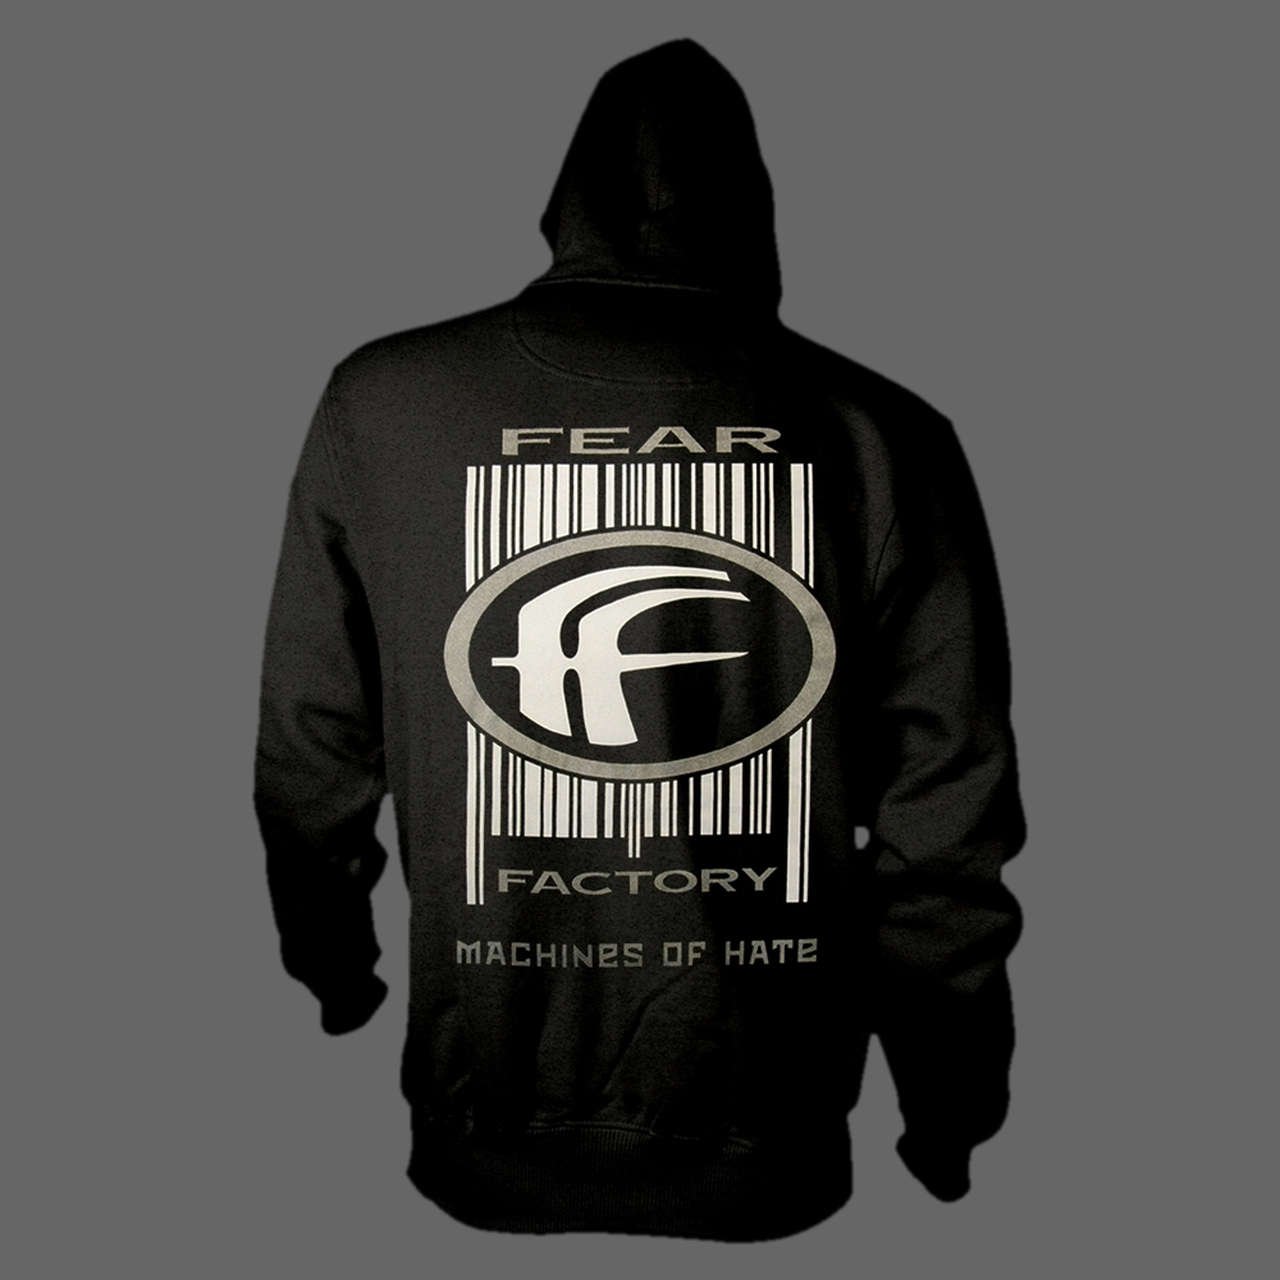 Fear Factory - Machines of Hate (Full Zip Hoodie)